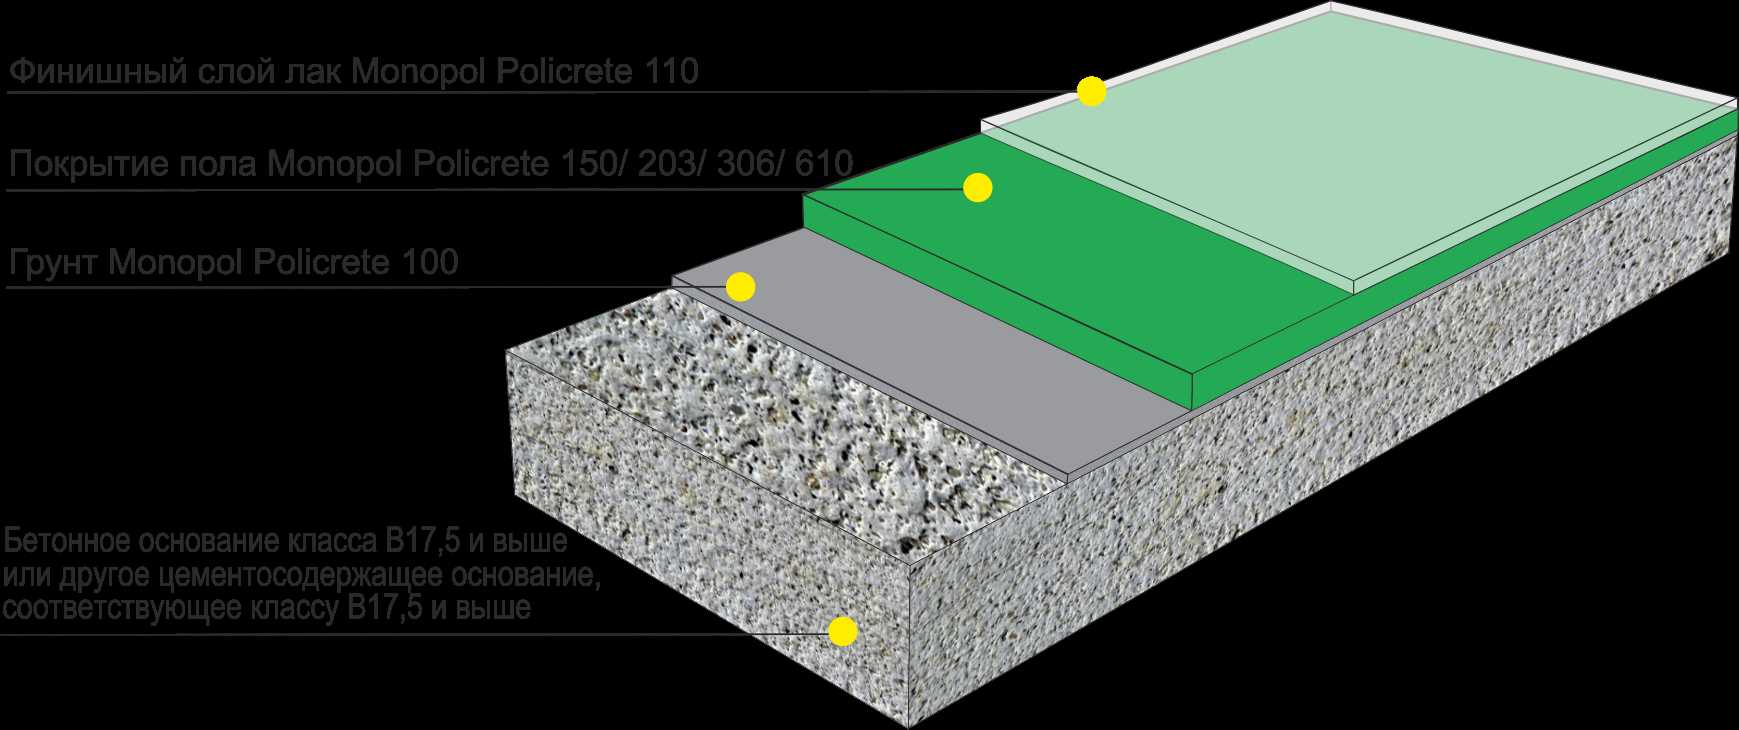 Основные характеристики жидкого наливного пола для выравнивания бетонного, виды и правила заливки